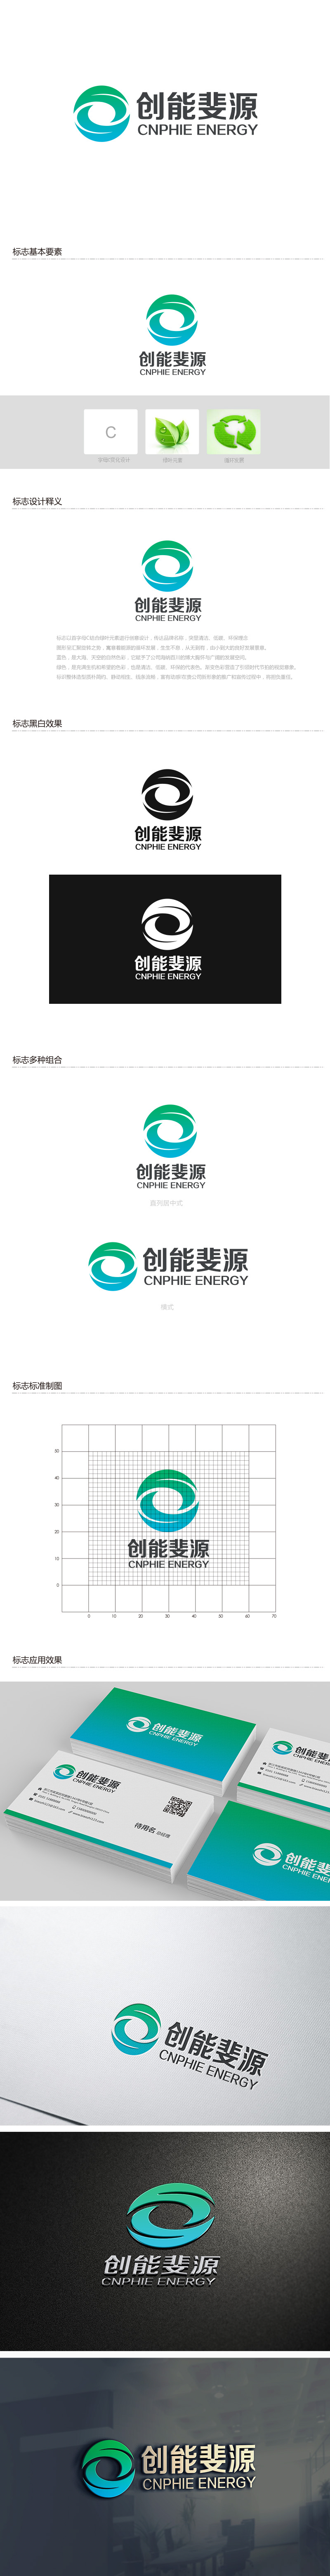 吴晓伟的中文：创能斐源；英文：cnφe energy或者cnphie energylogo设计